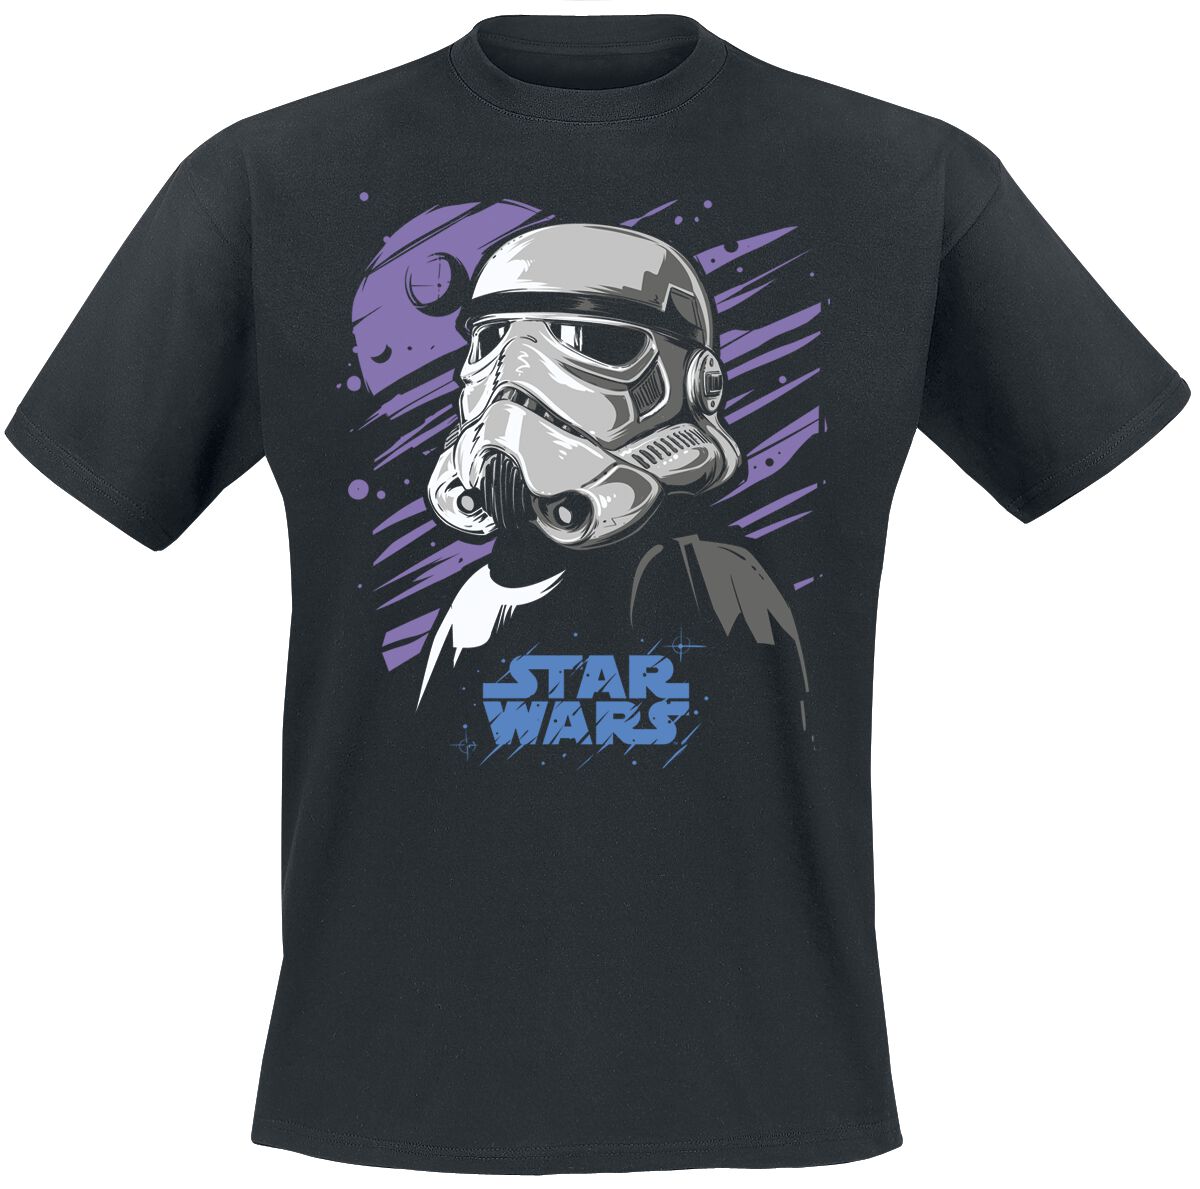 Star Wars T-Shirt - Galaxy Stormtrooper - M bis 5XL - für Männer - Größe 4XL - schwarz  - Lizenzierter Fanartikel